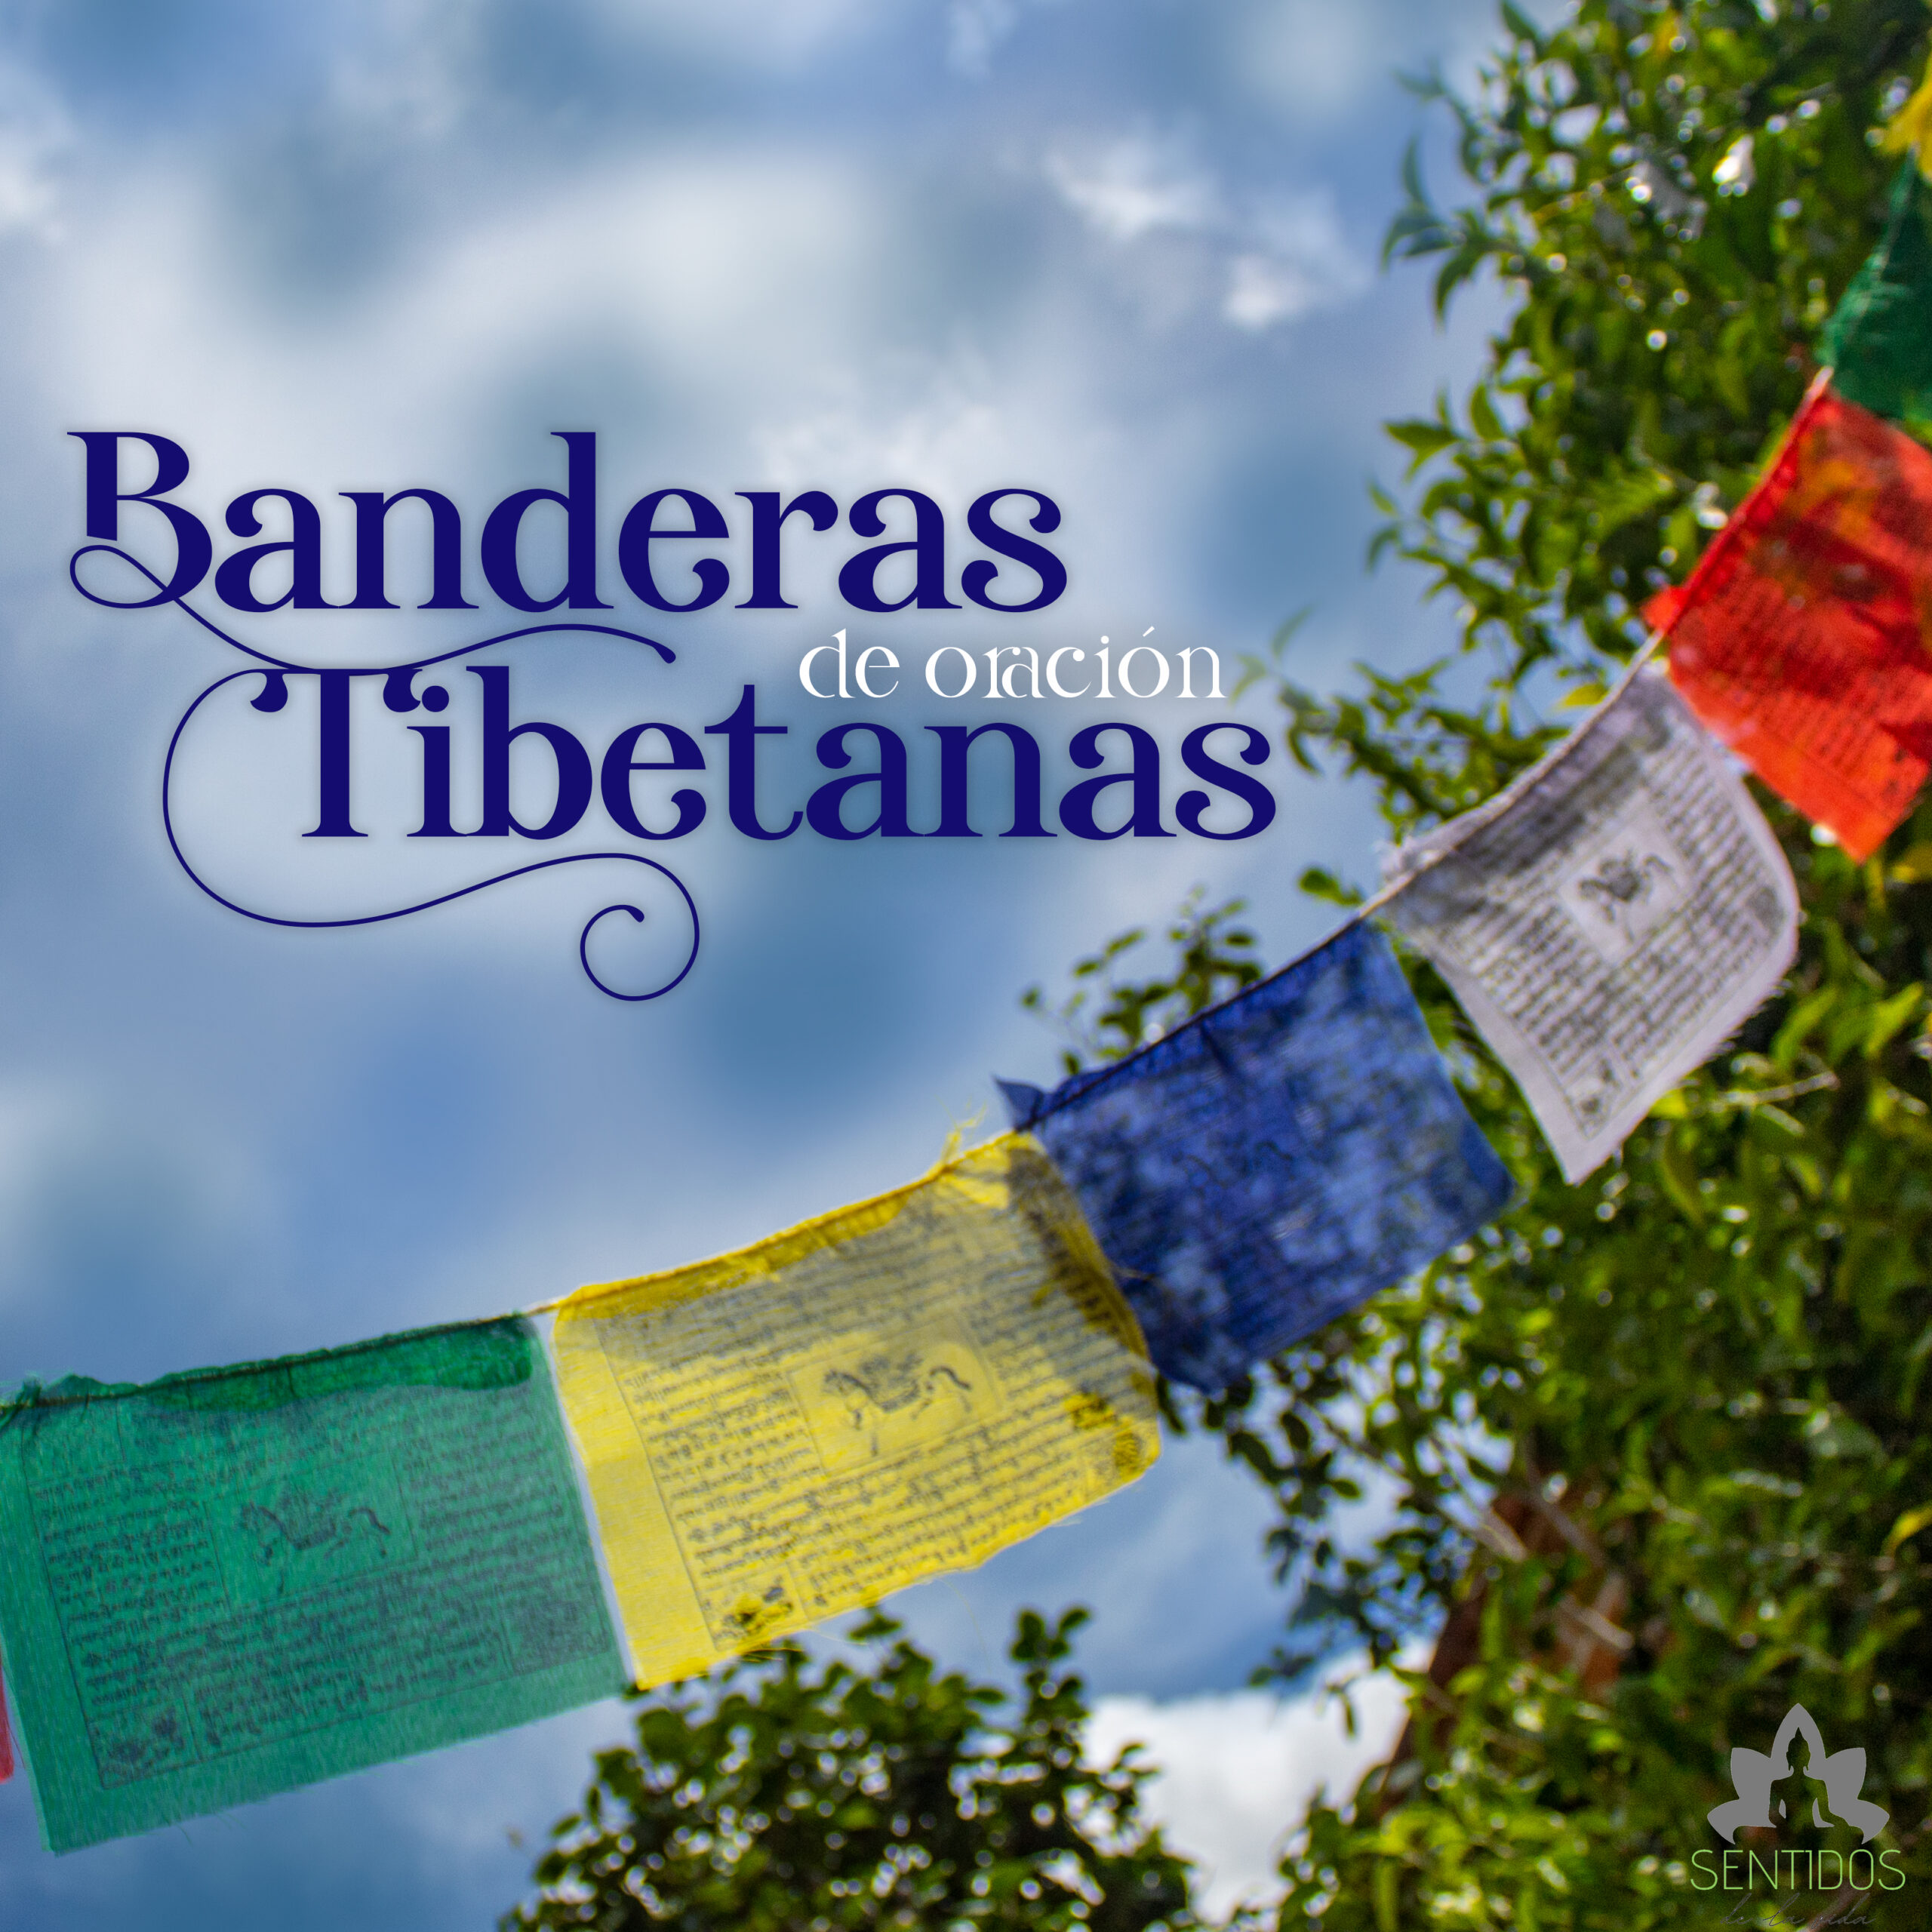 Banderas Tibetanas de Oración en el Budismo - Curiosidades y algo mas